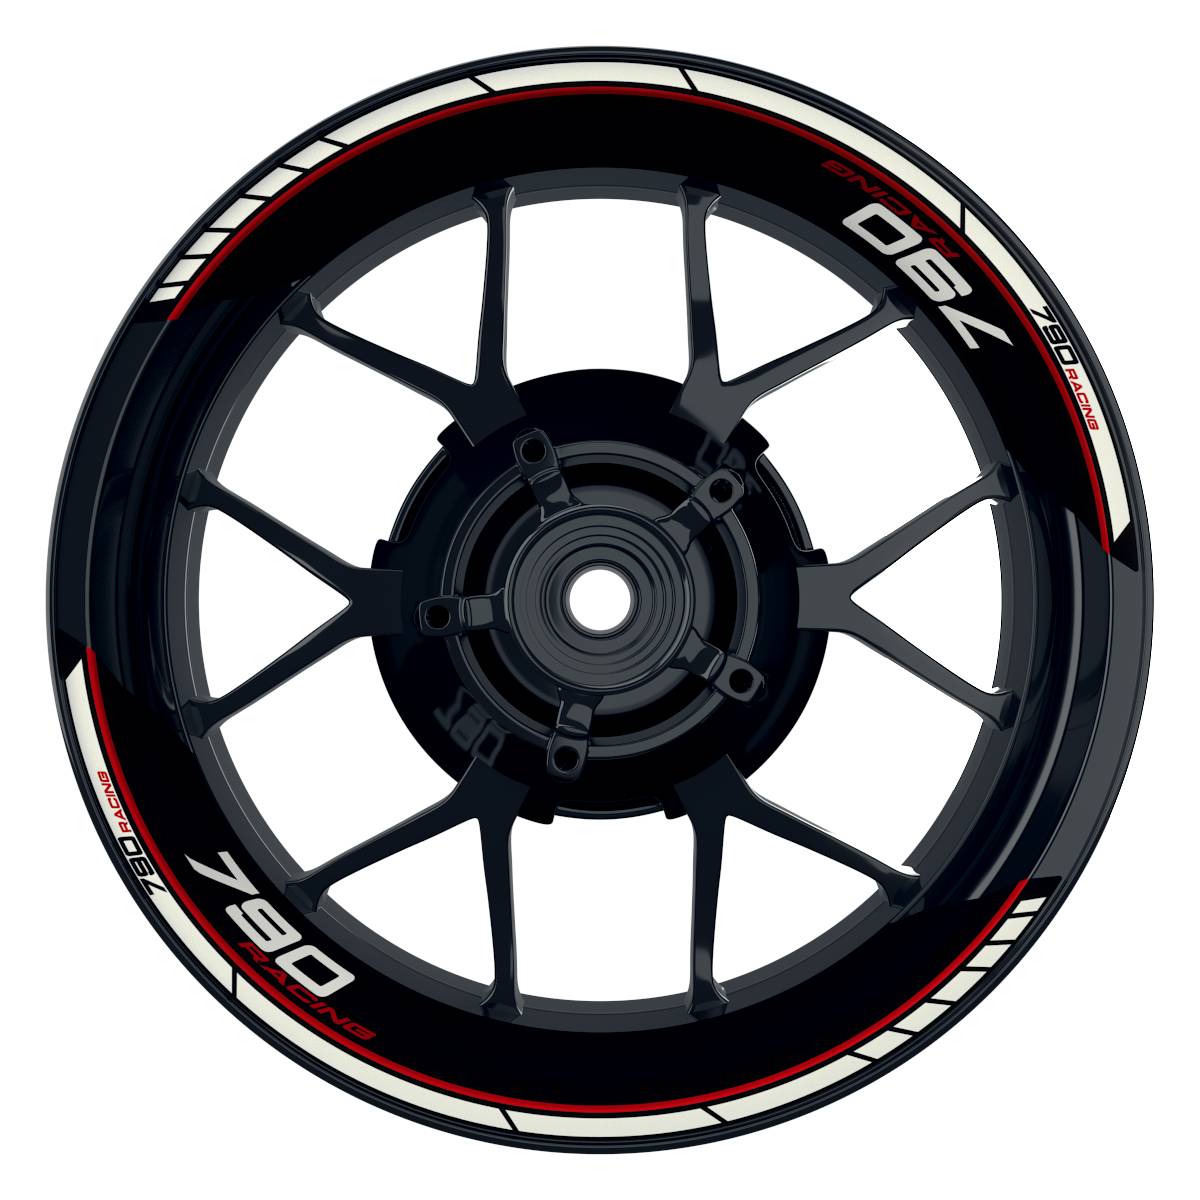 KTM Racing 790 Clean schwarz rot Frontansicht